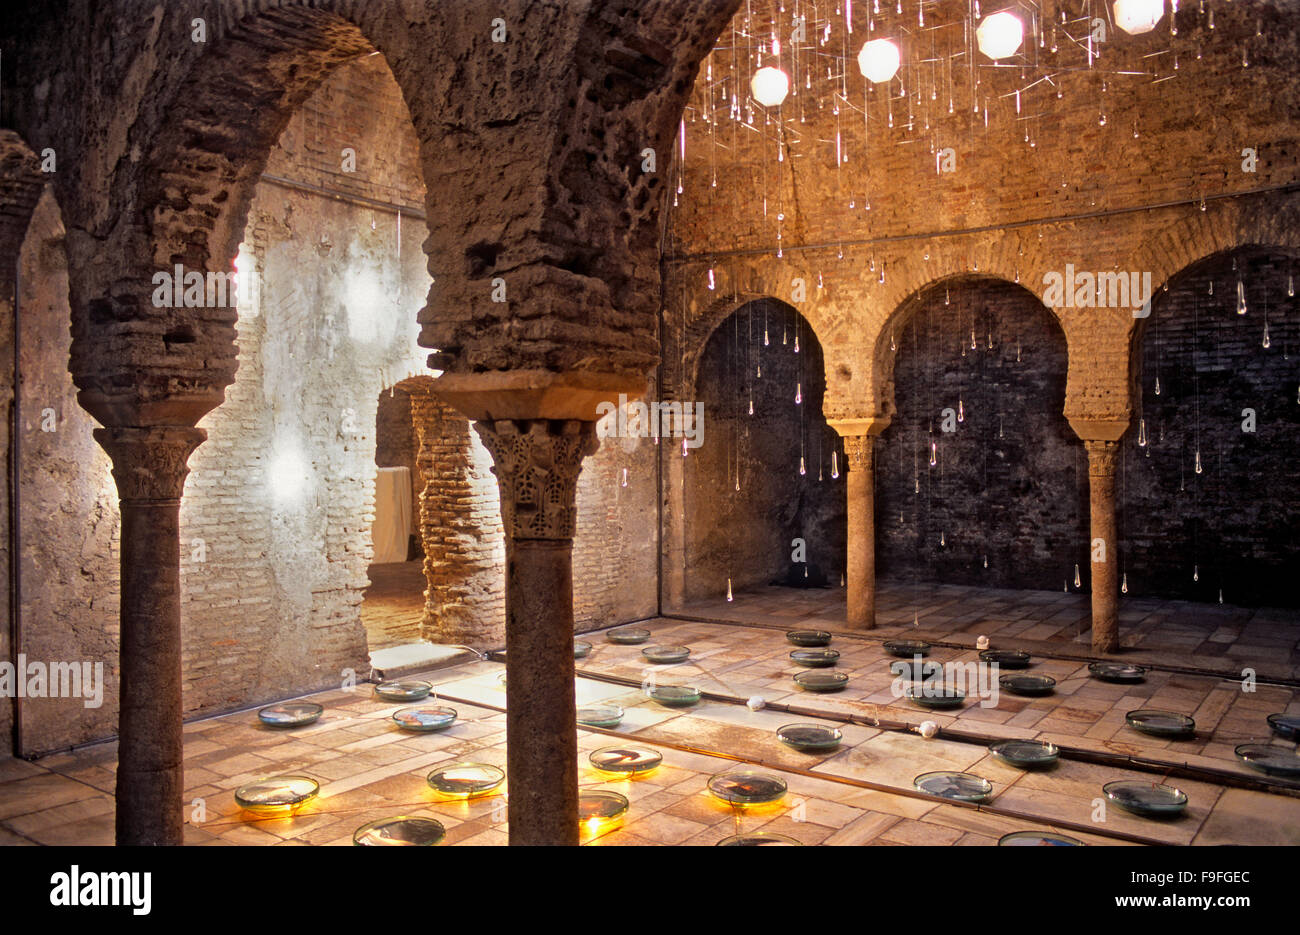 El Bañuelo, Arab baths. In Carrera del Darro, 31 .Albaicín quarter. Granada, Andalucia, Spain Stock Photo